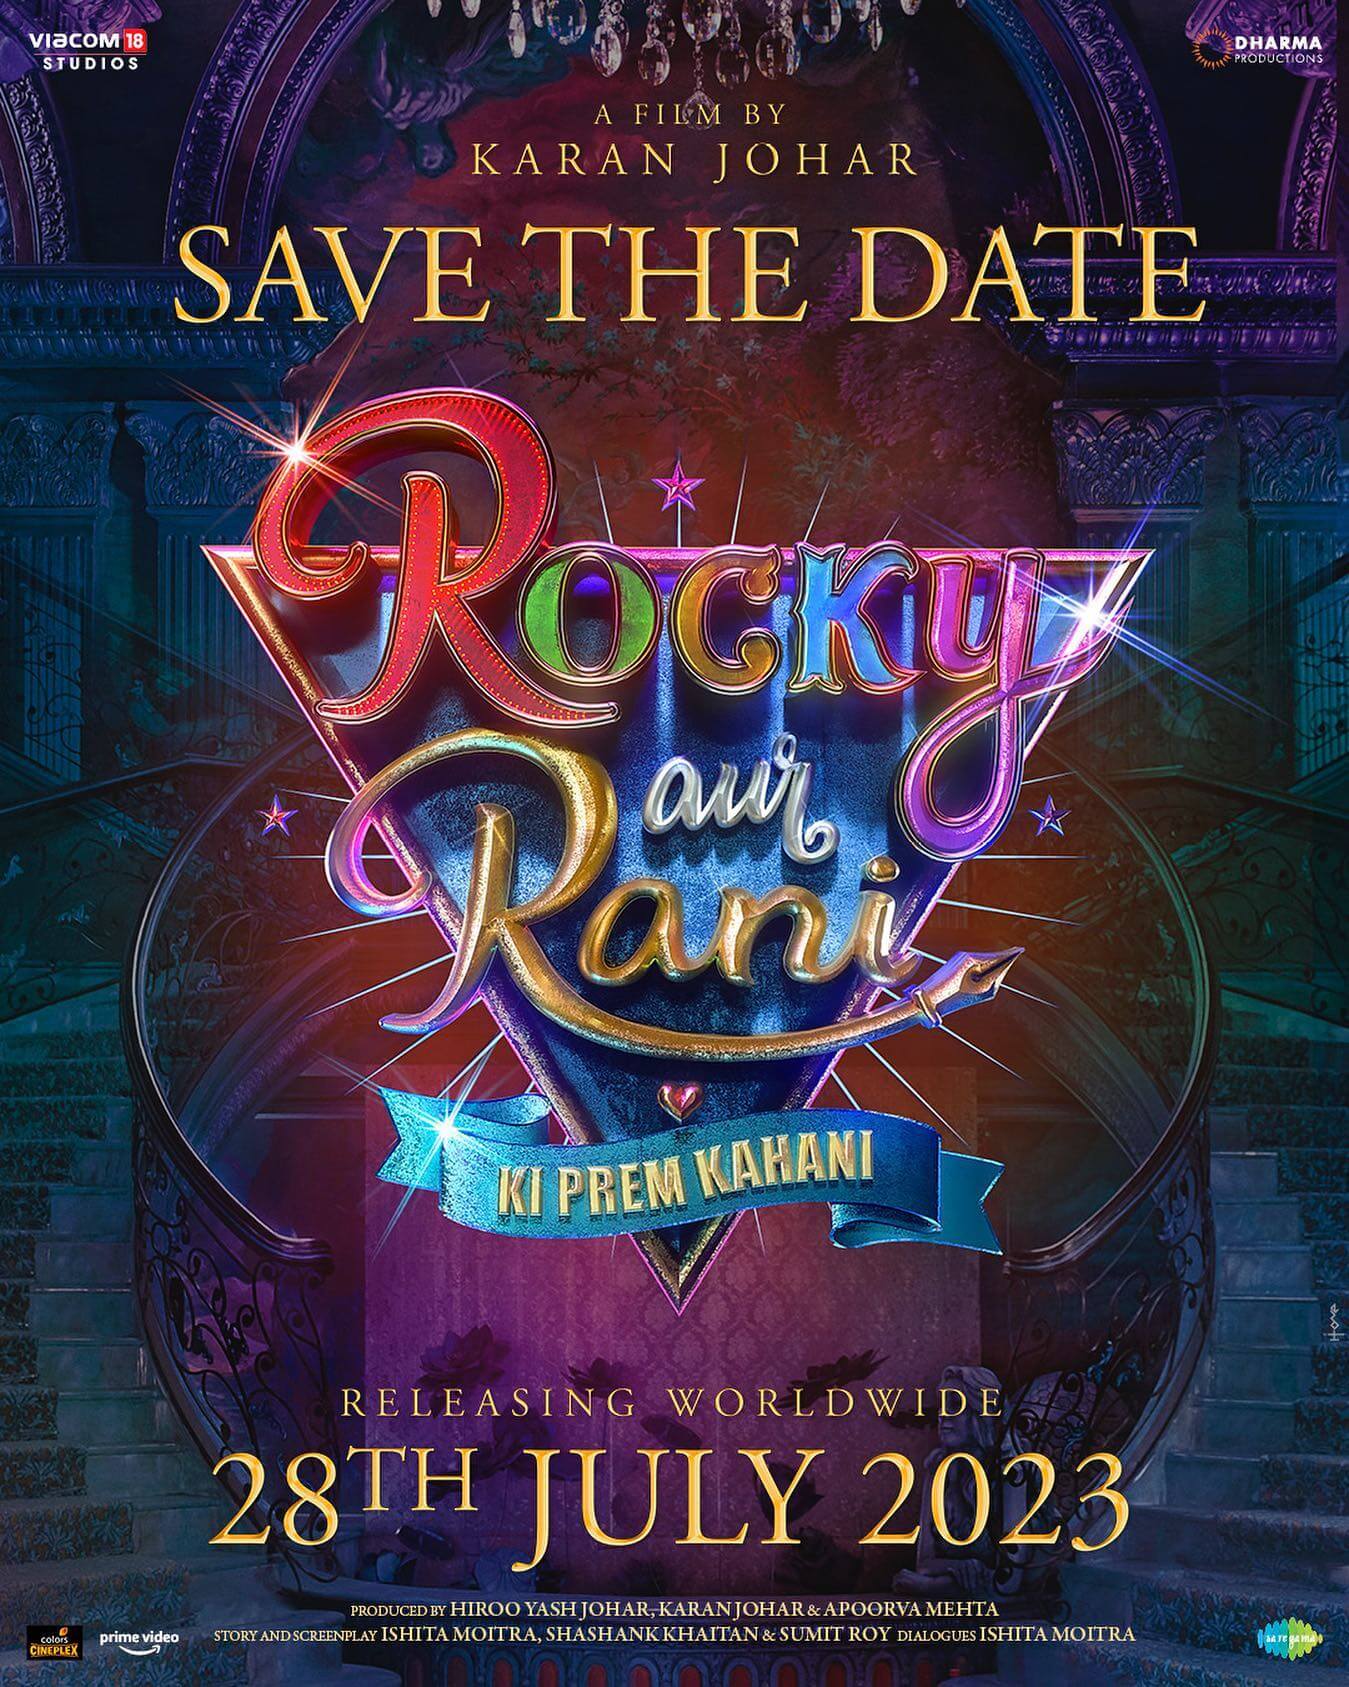 Rocky Aur Rani Ki Prem Kahani poster